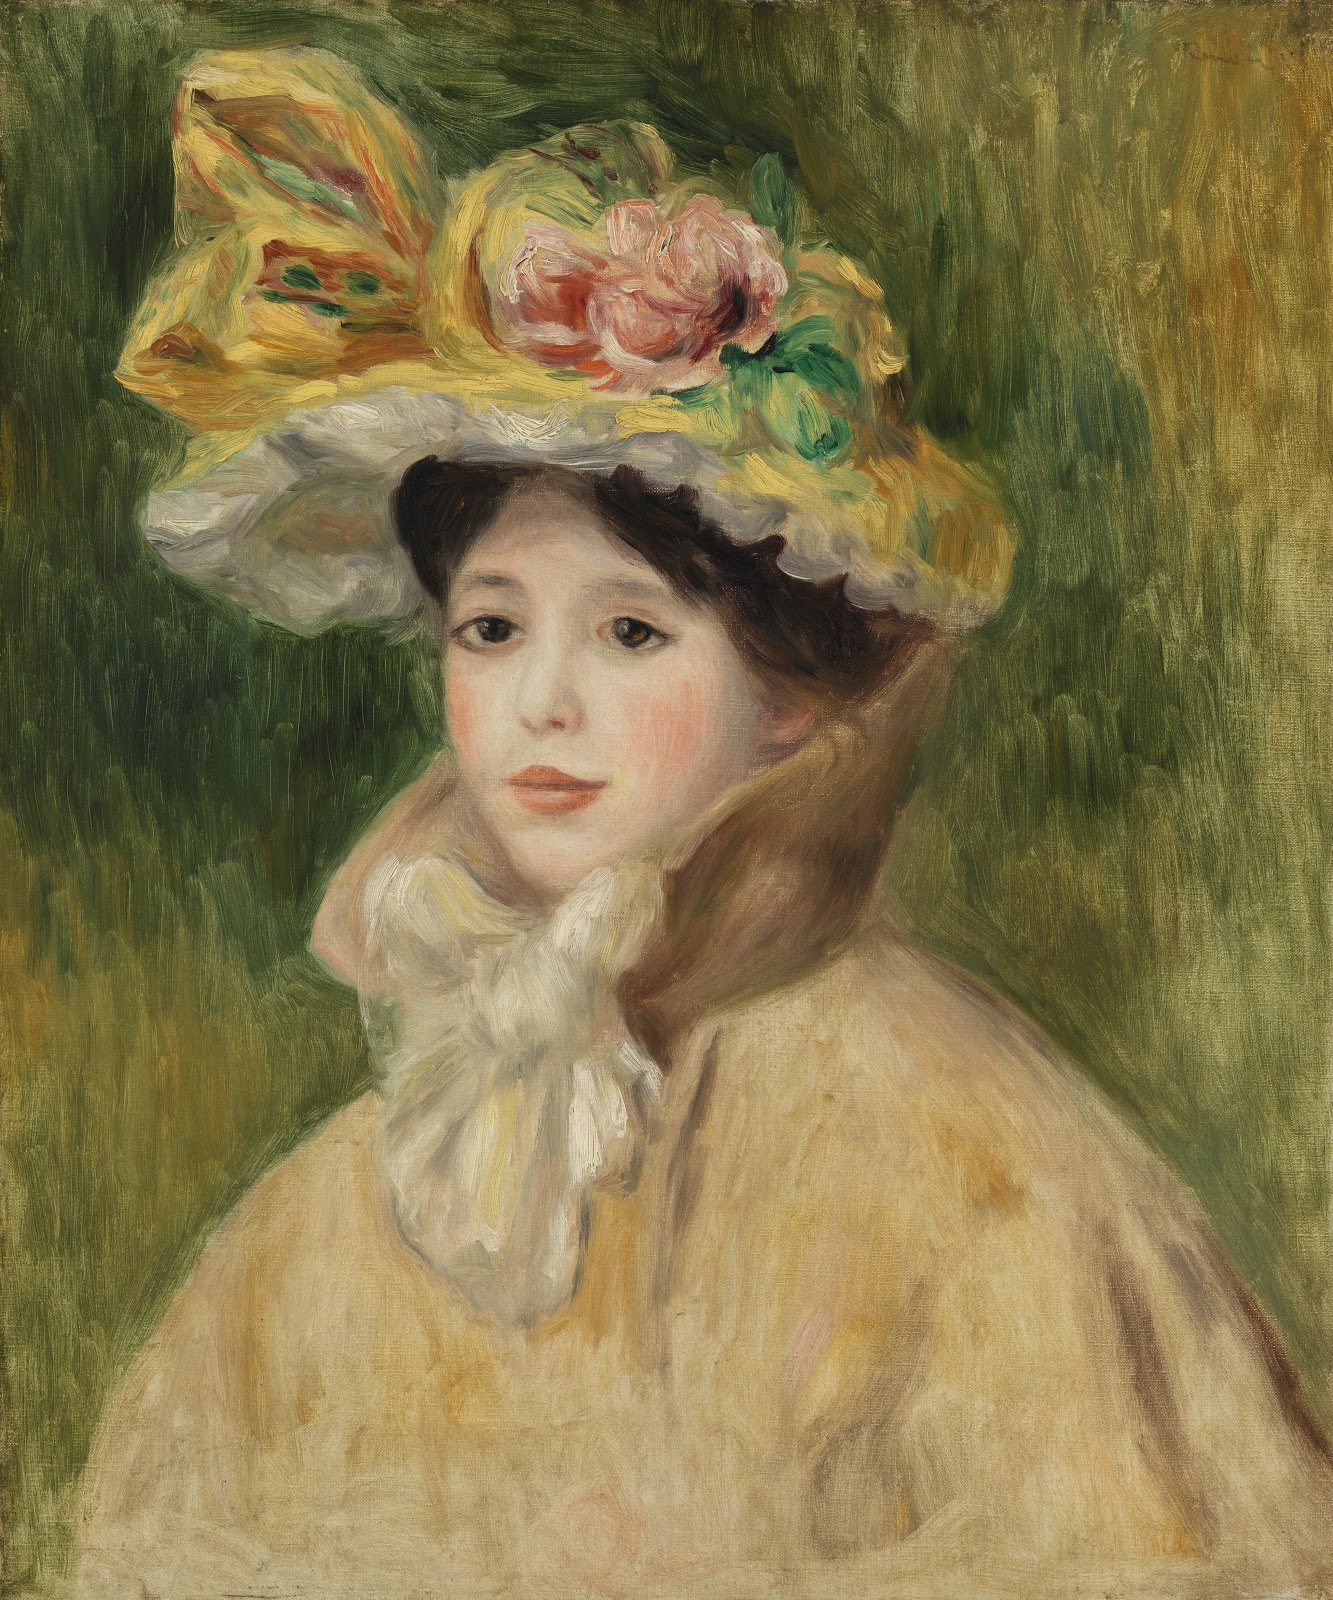 Pierre+Auguste+Renoir-1841-1-19 (1012).jpg